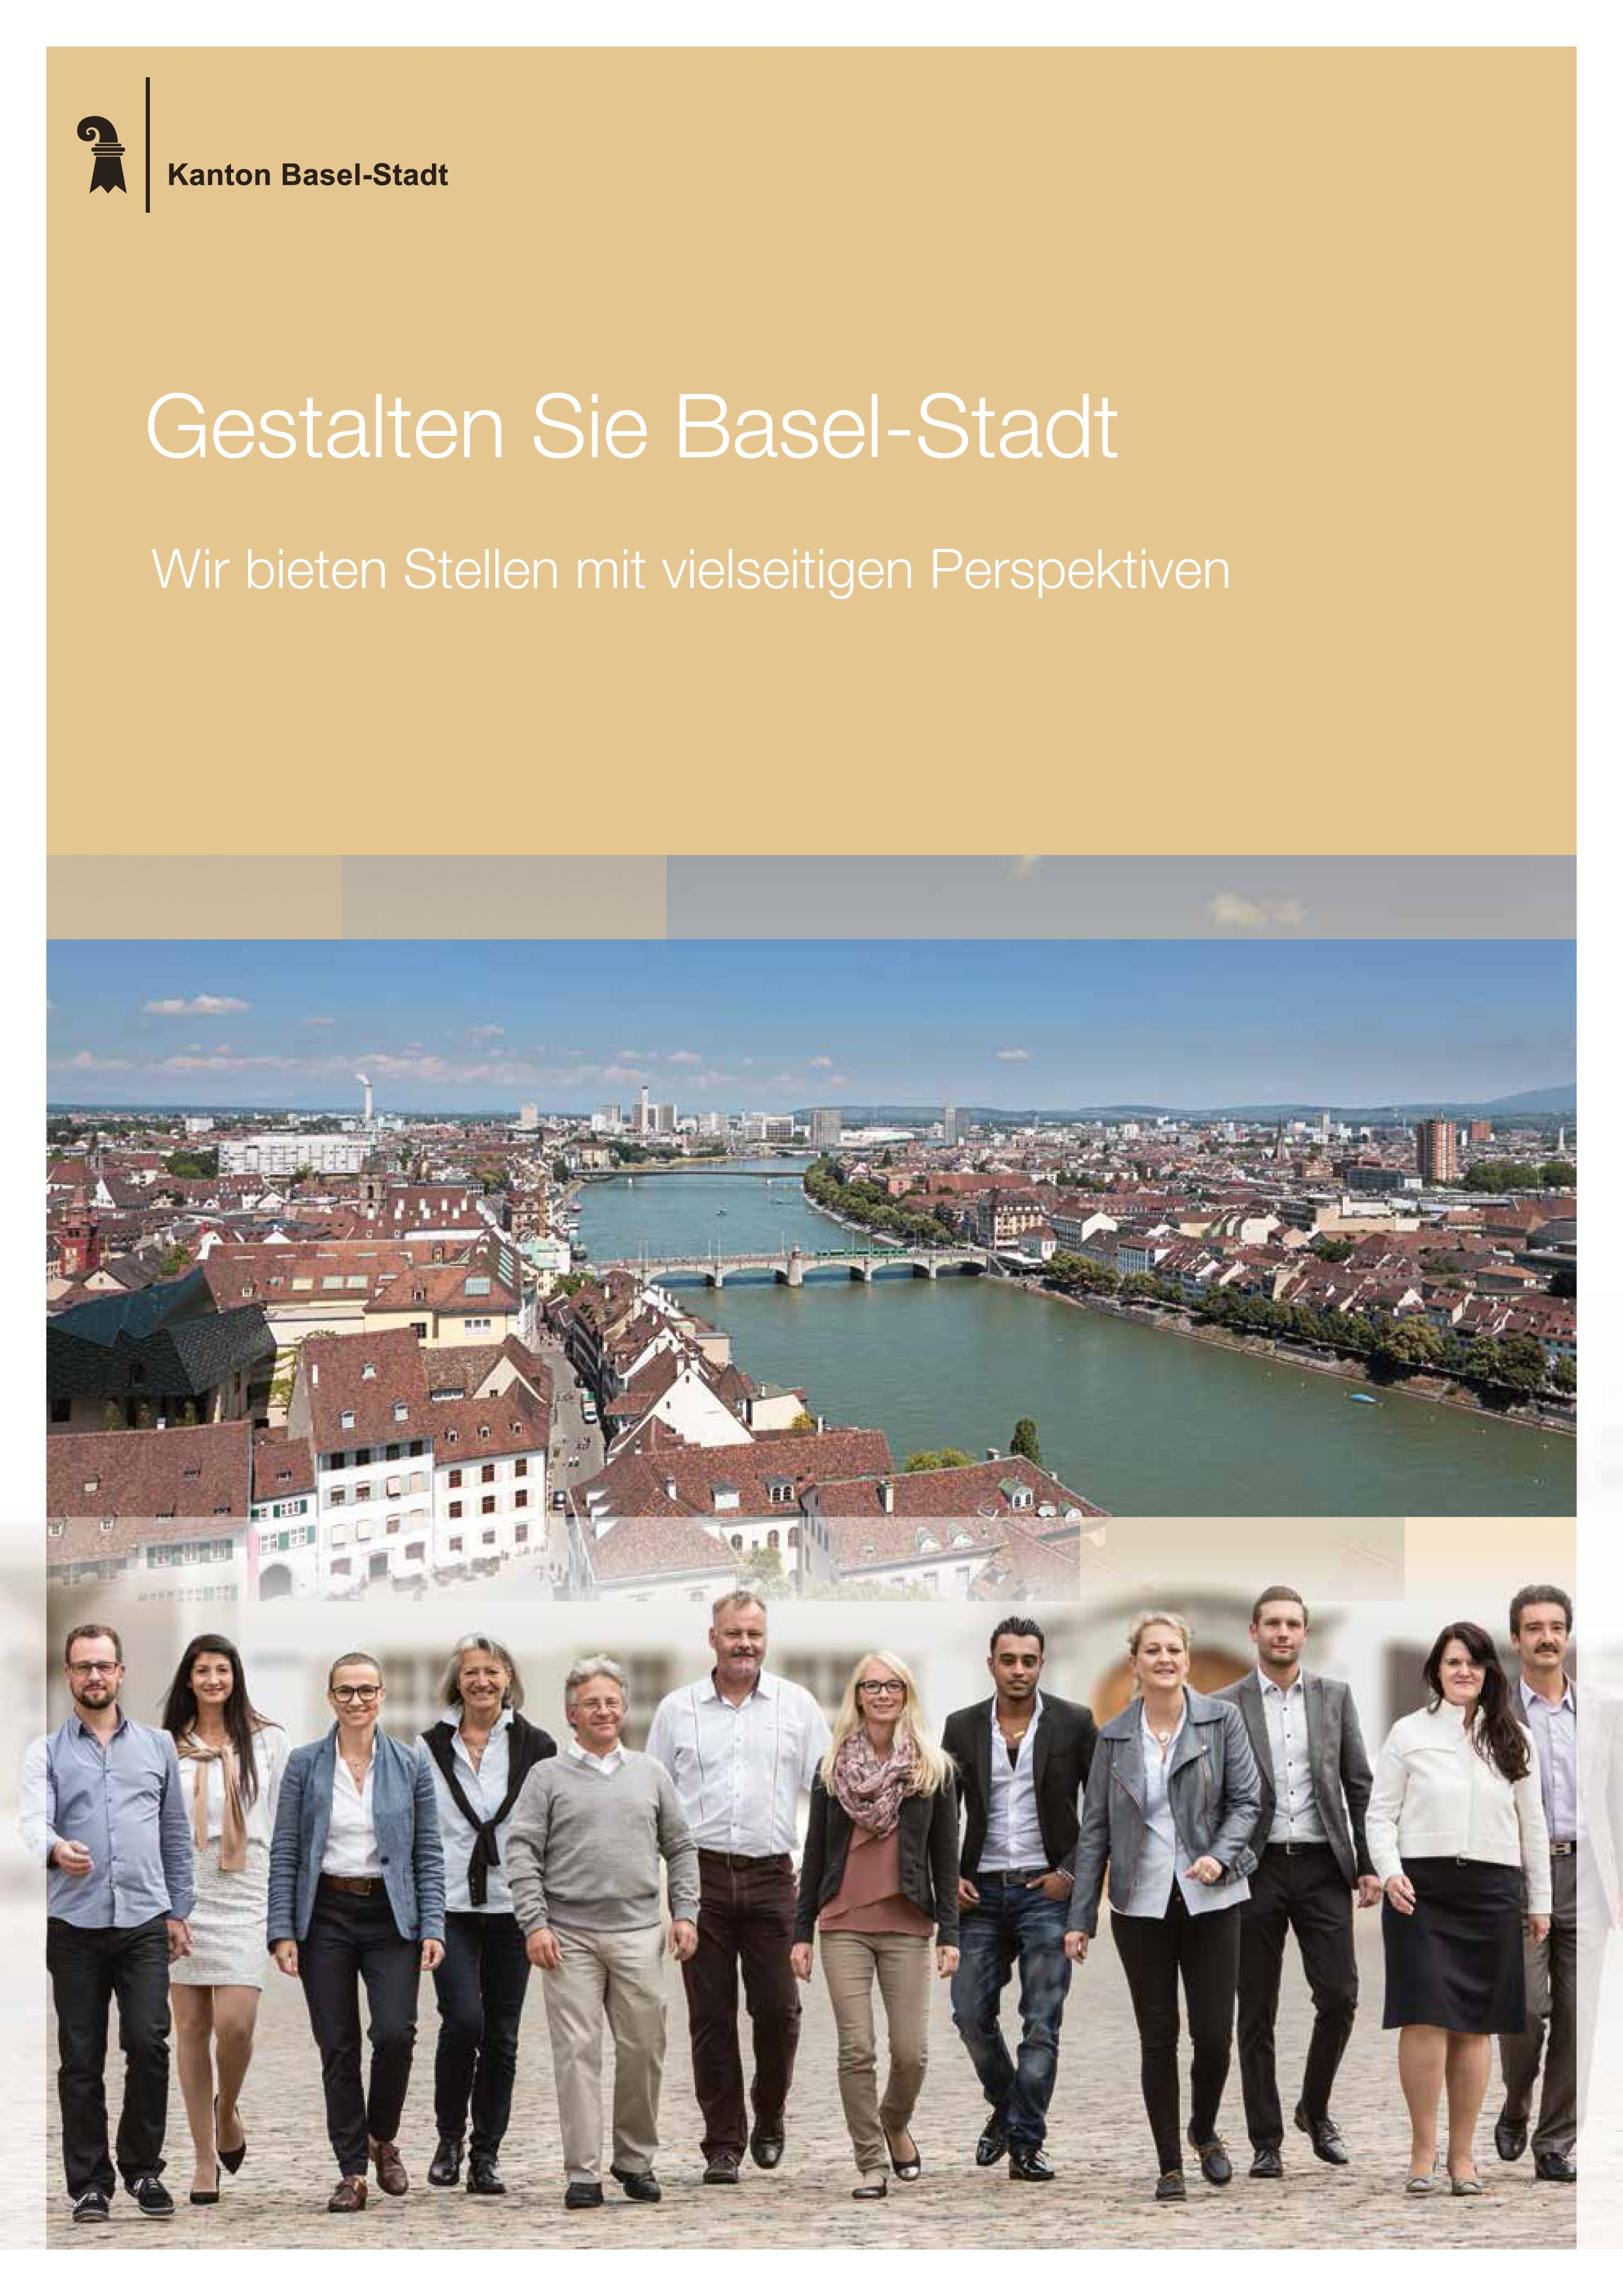 Auf dem Titelbild sind zwei Personen zu sehen und eine Treppe. Die Personen, ein Mann und eine Frau, stehen für die Mitarbeiterinnen und Mitarbeiter des Kantons Basel-Stadt. Die Treppe versinnbildlicht die Entwicklung unserer Mitarbeiterinnen und Mitarbeiter.